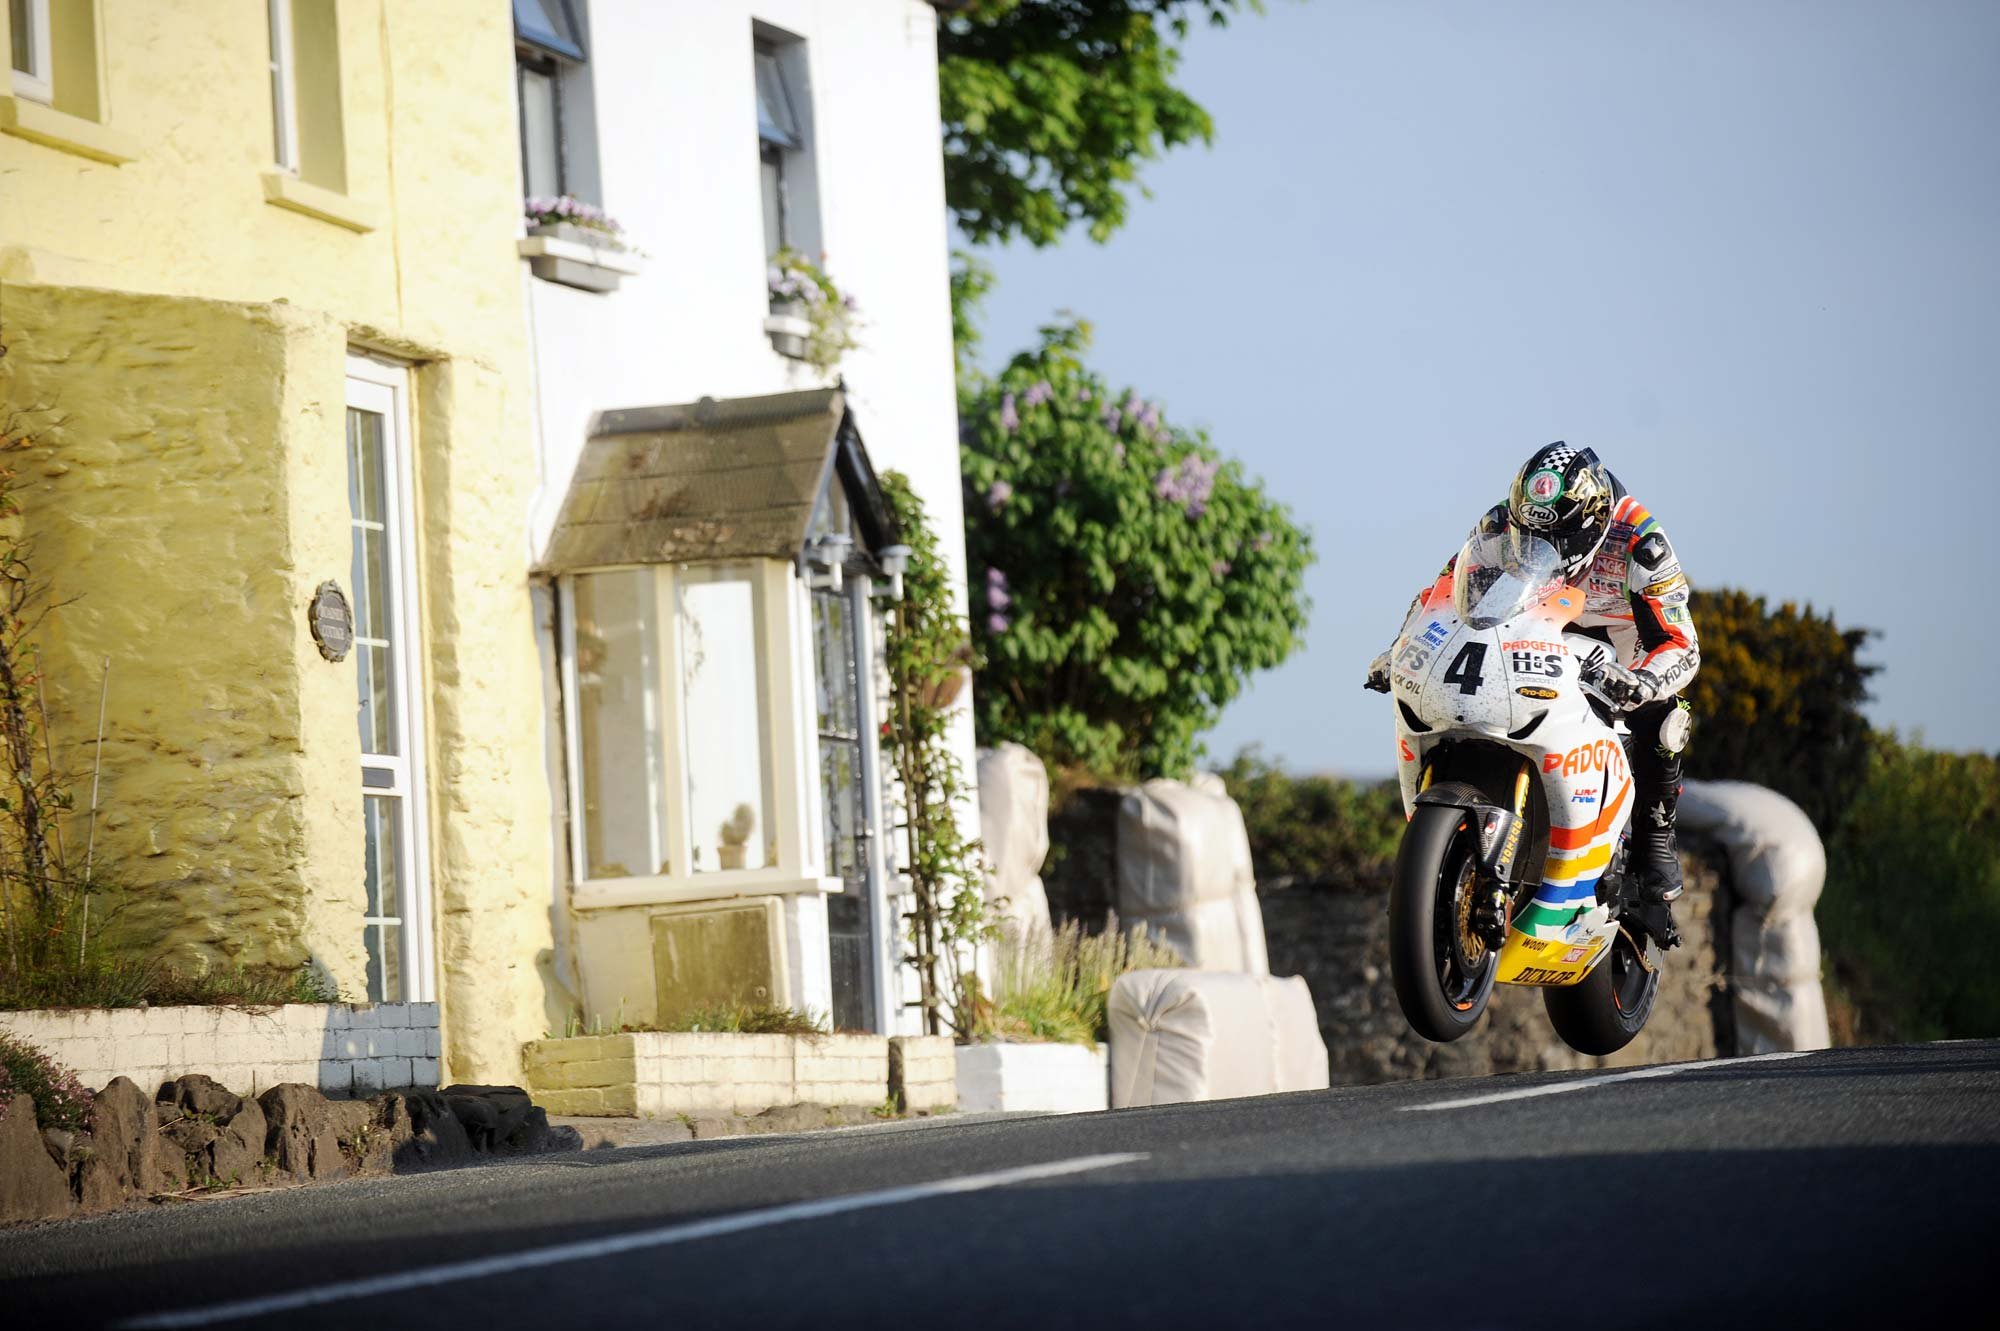 2015 Isle of Man TT (Tourist Trophy) - Corrida de moto mais